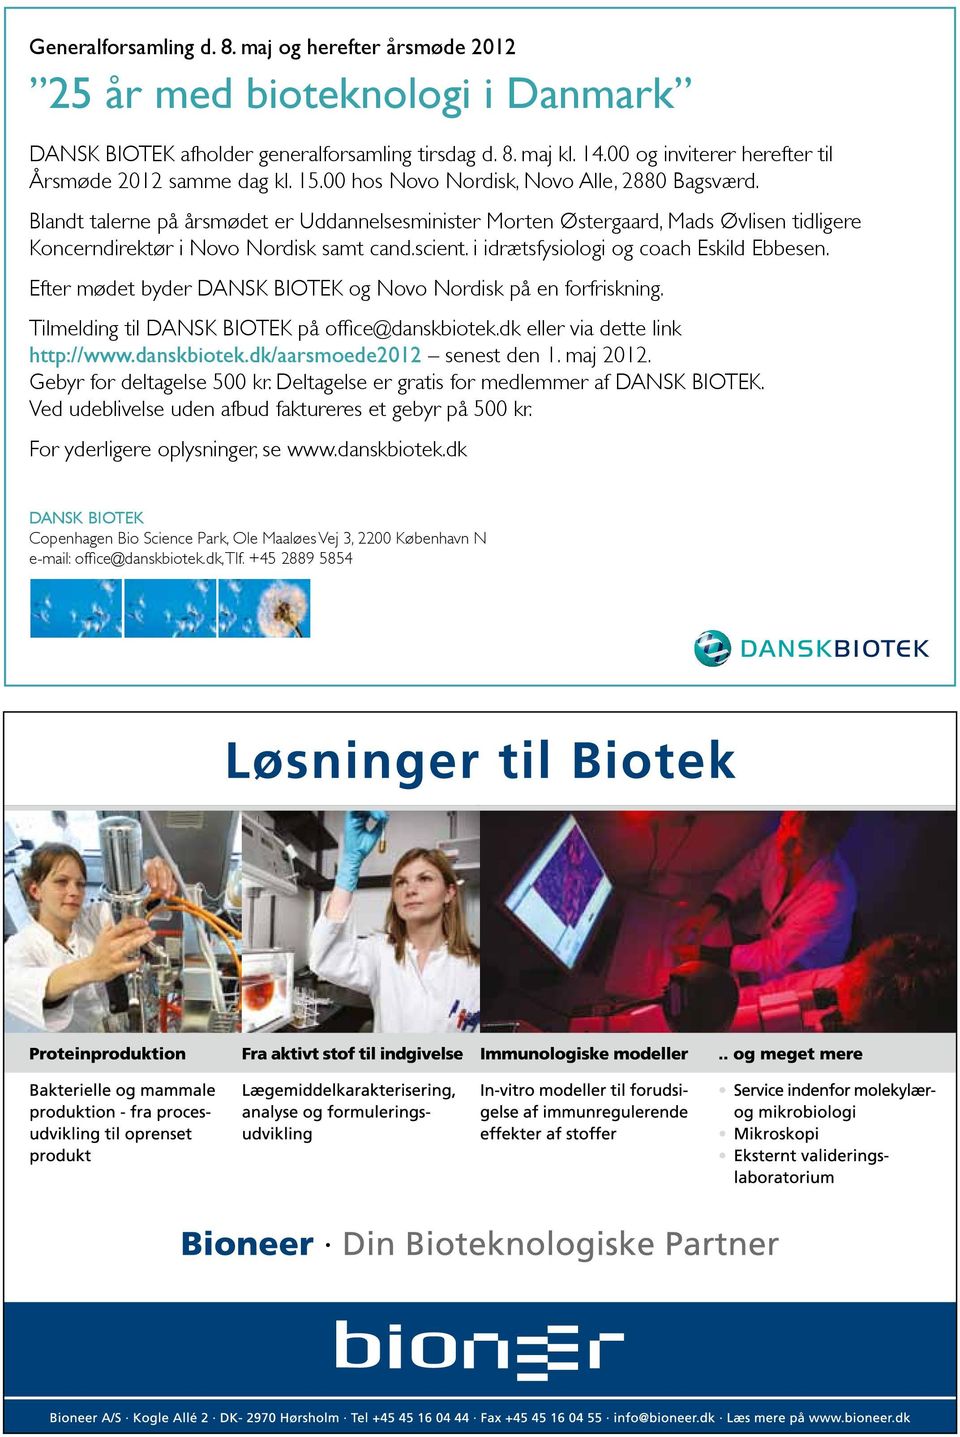 DANSK Kerneområdet BIOTEK er afholder bioteknologi generalforsamling anvendt inden tirsdag for lægemiddeludvikling d. 8. maj kl. 14.00 og og inviterer industriel herefter bioteknologi.